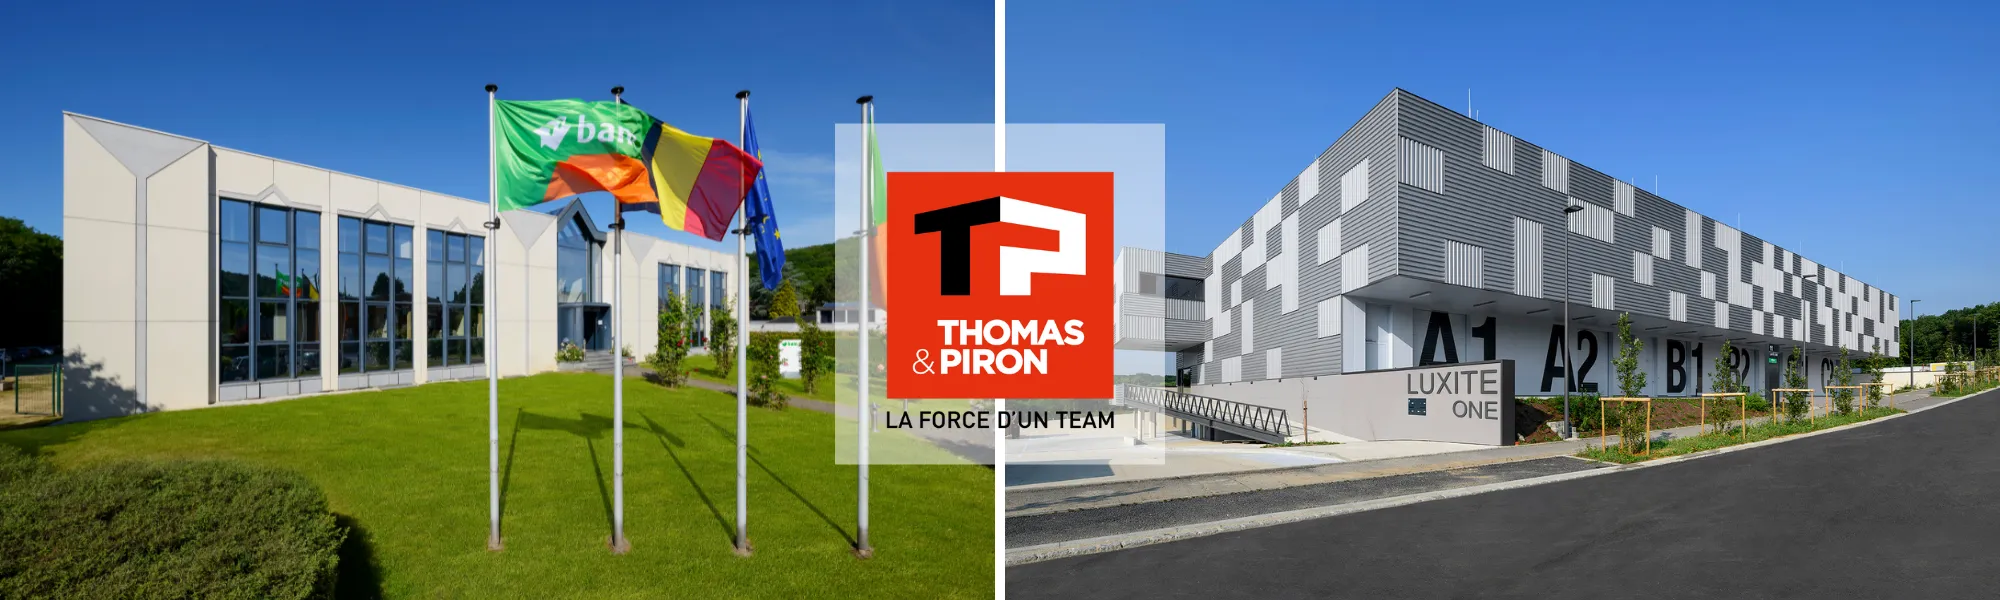 Le Groupe Thomas & Piron acquiert les entreprises BAM Galère et BAM Lux